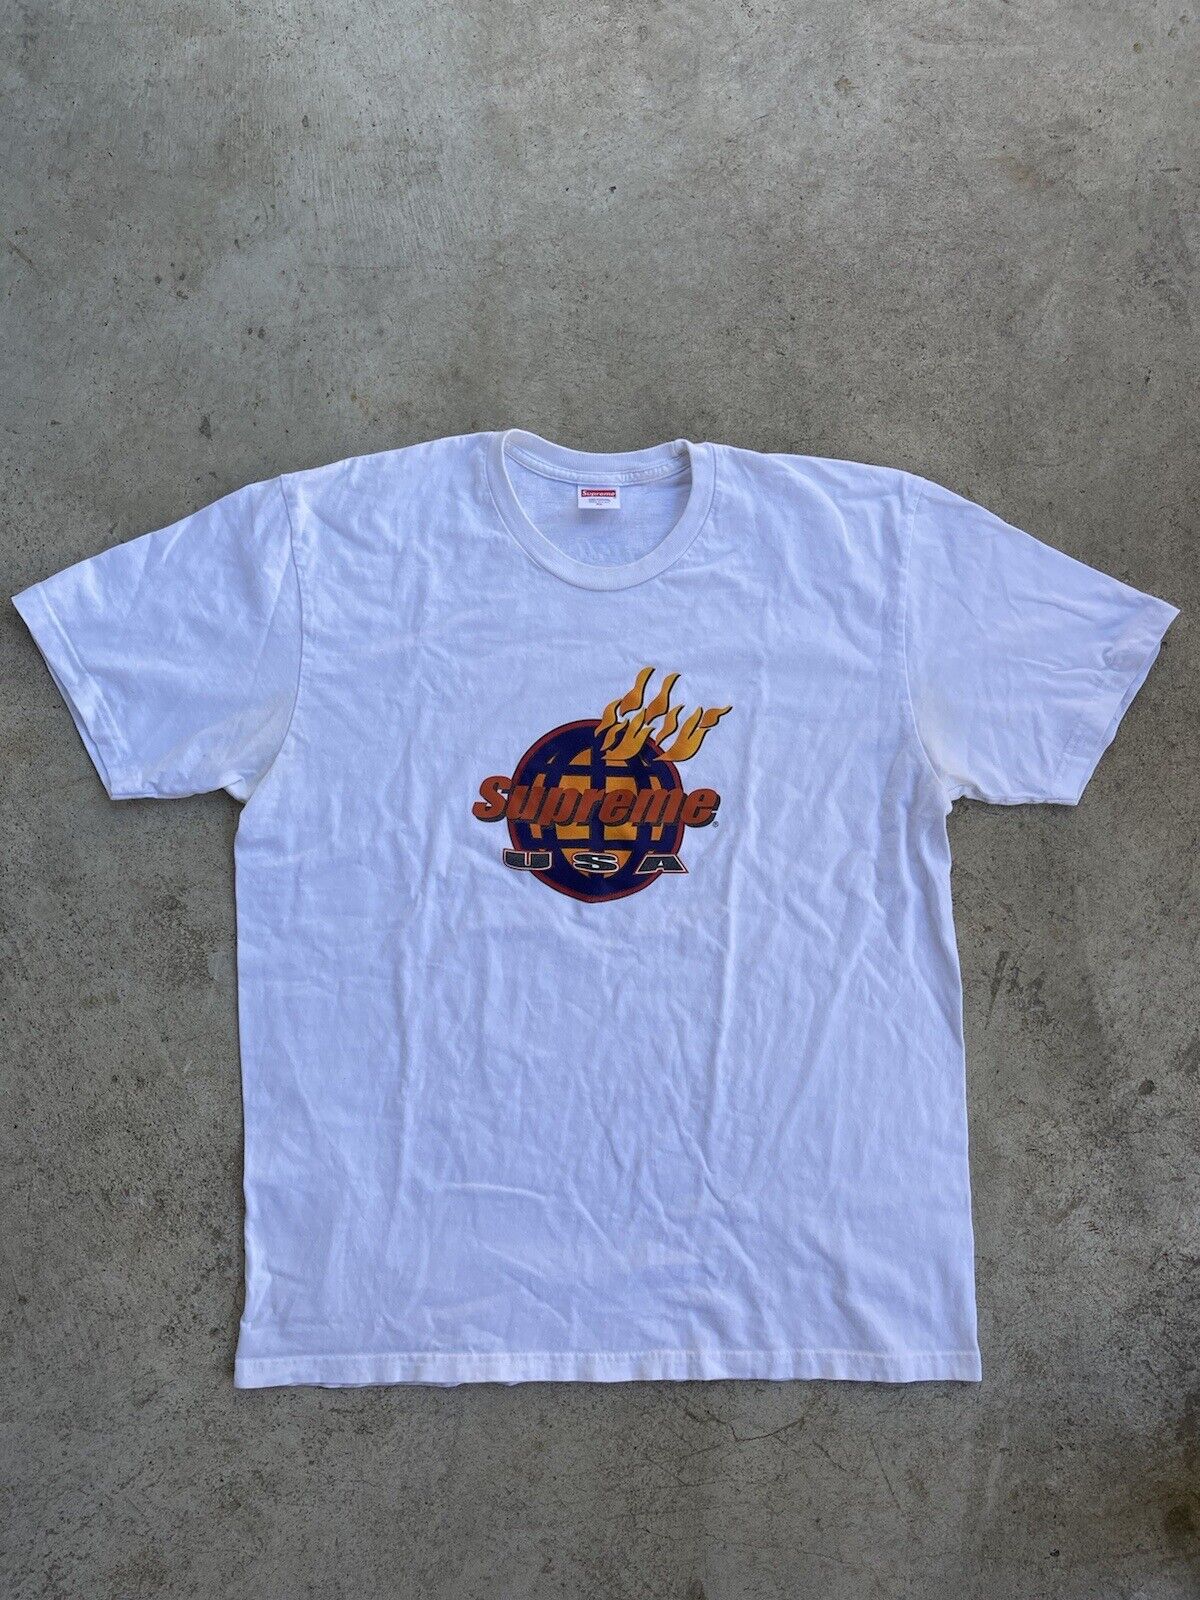 Supreme Fire USA Tee F/W 17 Sz XL White Shirt